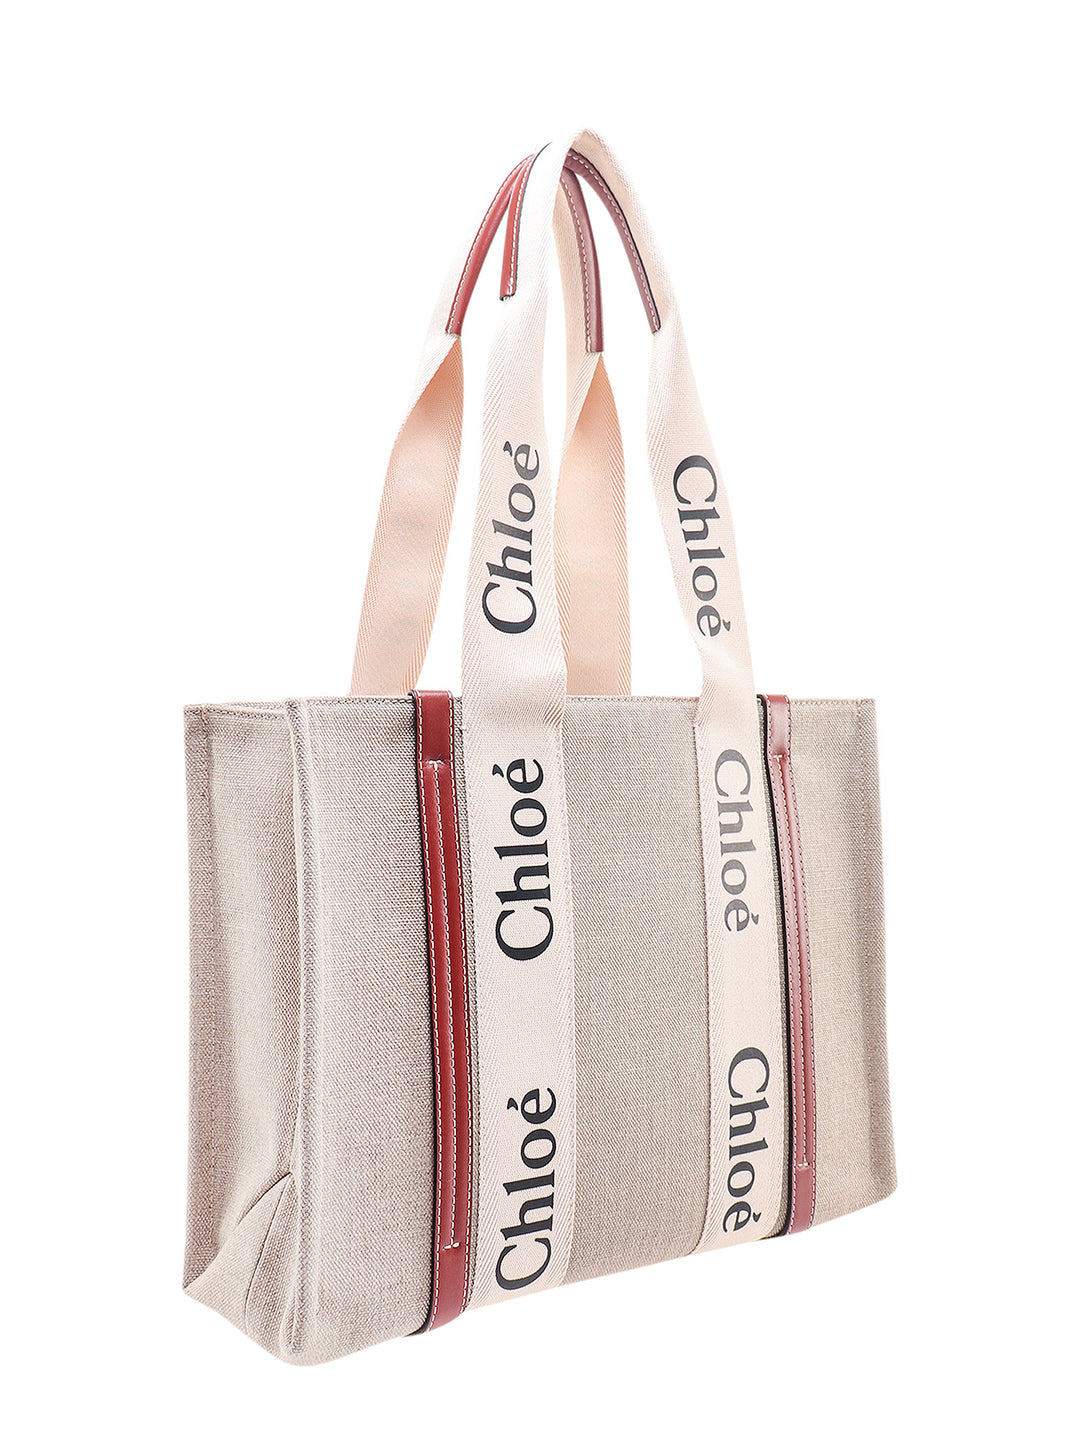 Borsa a spalla in lino con stampa logo.  Questa borsa è realizzata con materiale a minor impatto ambientale